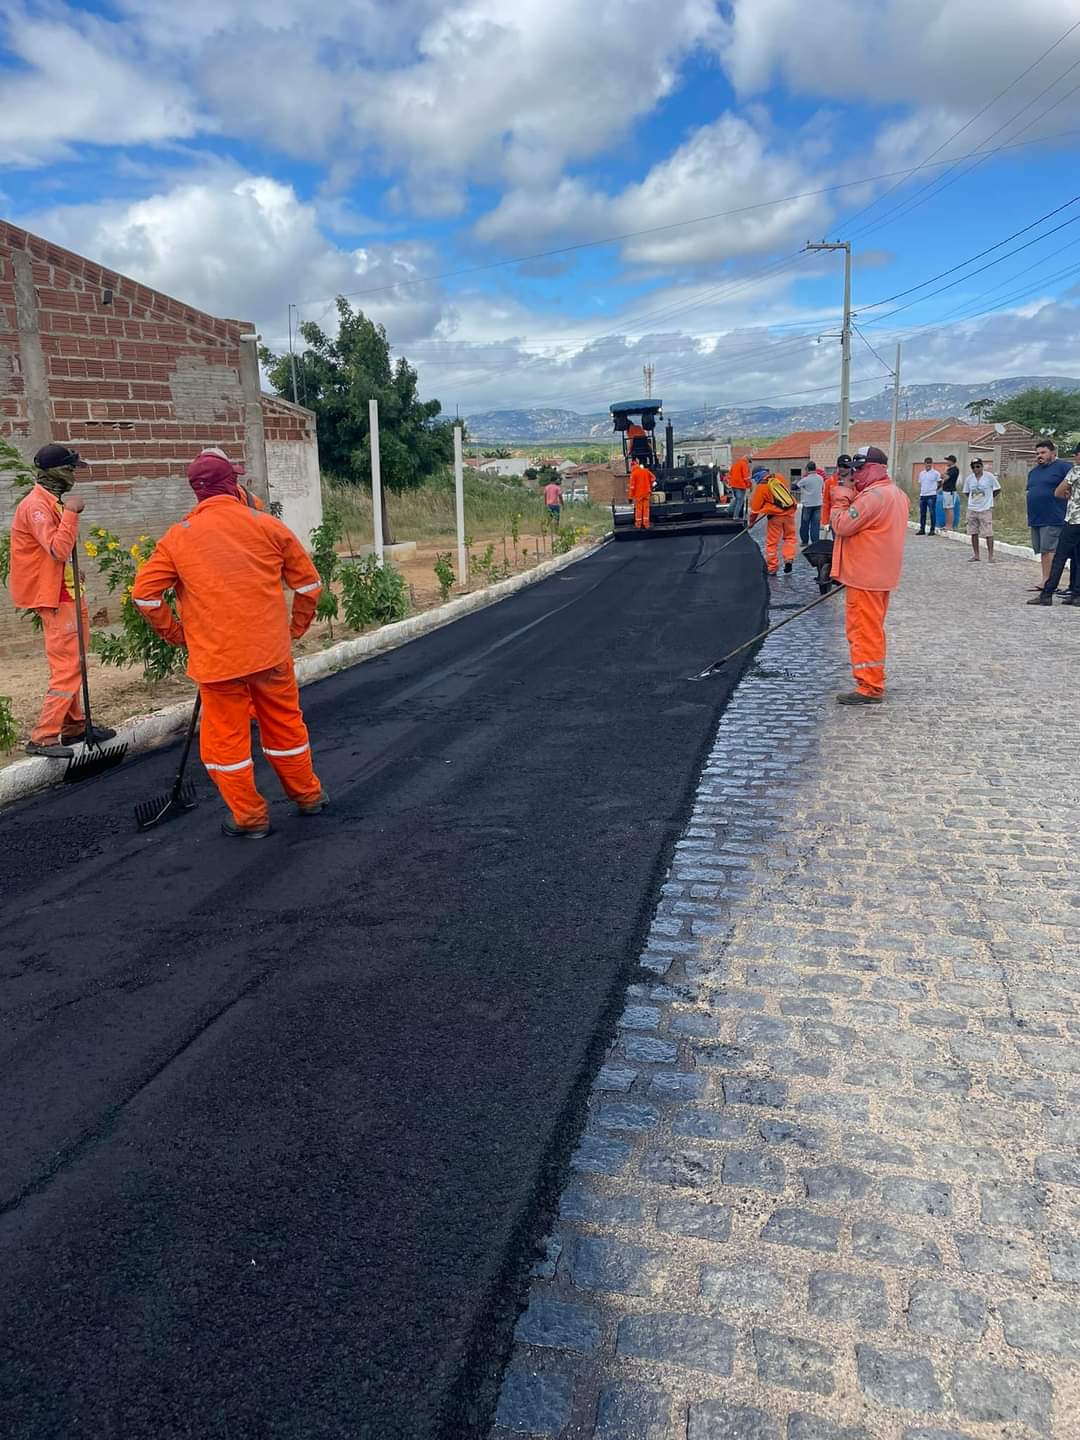 FB_IMG_1653753503510 Parceria Estado e Prefeitura: Pavimentação asfáltica da travessia urbana de São João do Tigre é iniciada